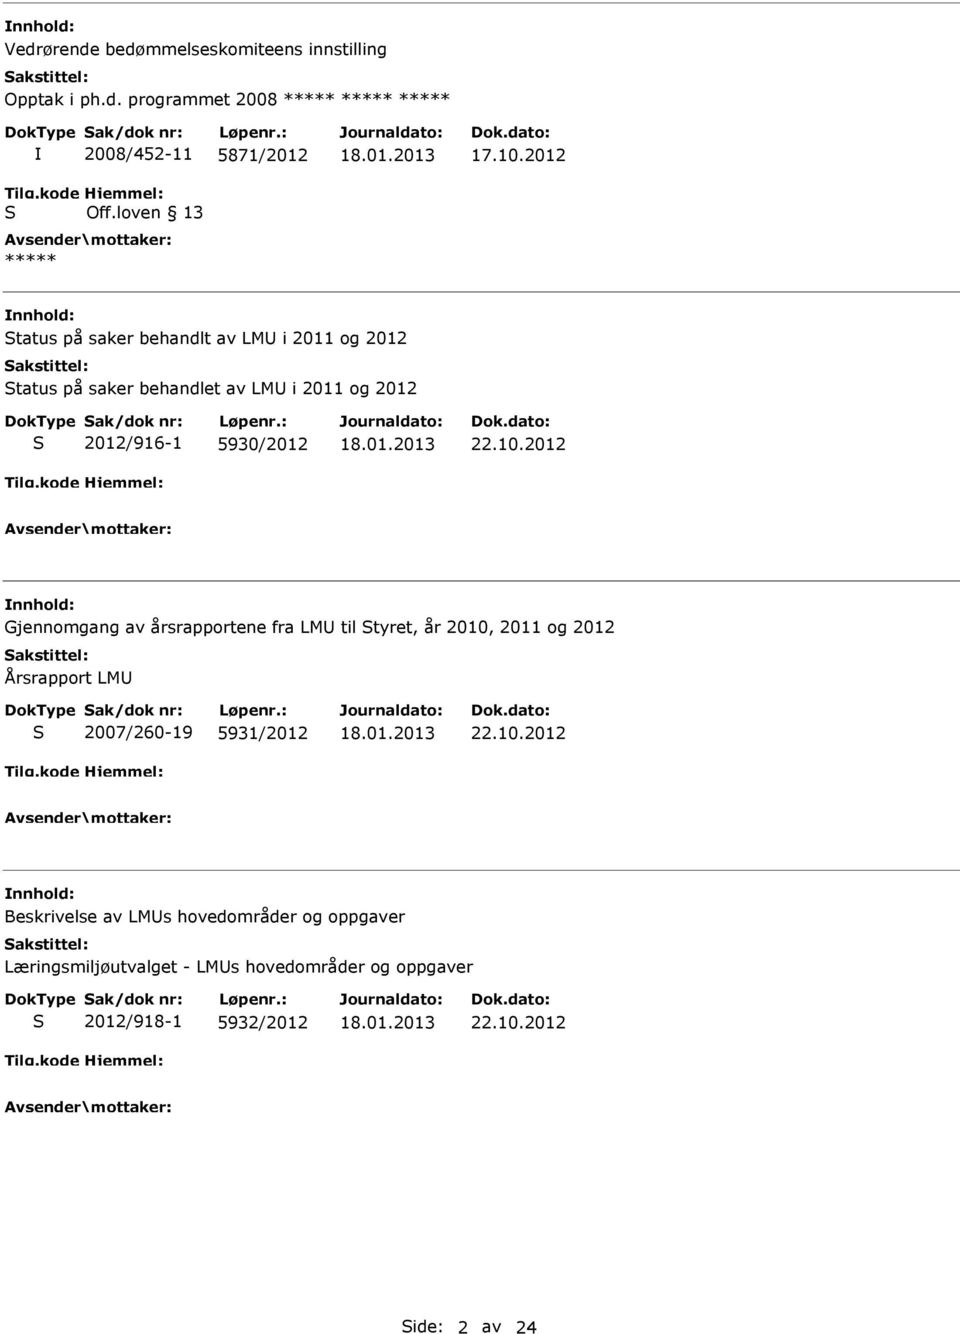 10.2012 Beskrivelse av LMUs hovedområder og oppgaver Læringsmiljøutvalget - LMUs hovedområder og oppgaver 2012/918-1 5932/2012 22.